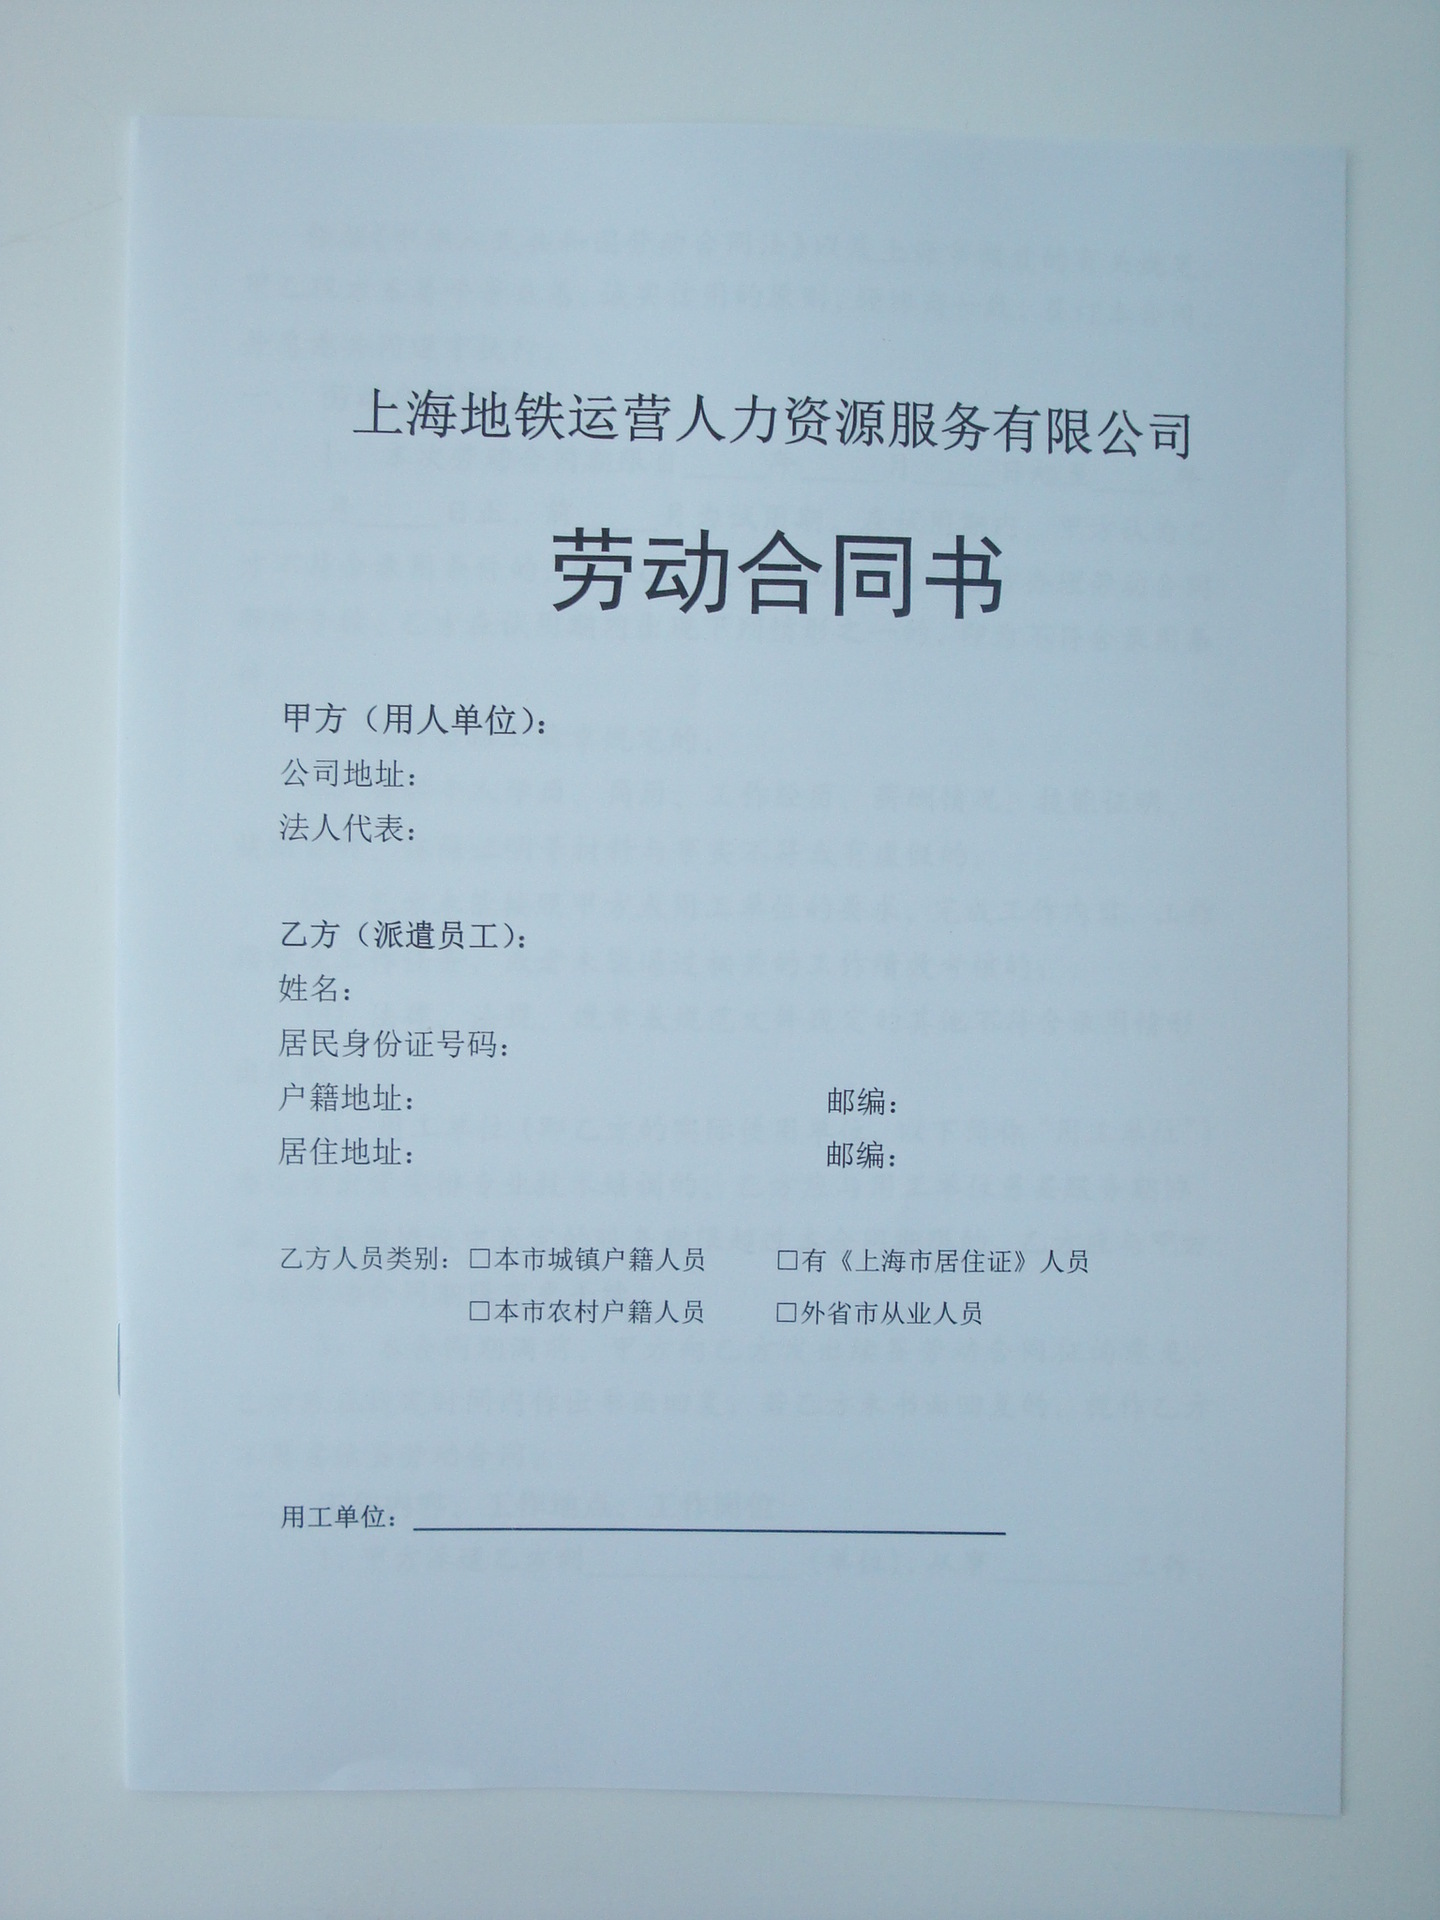 上海印刷厂 劳动合同书样本画册印刷宣传册 ,免费排版制作